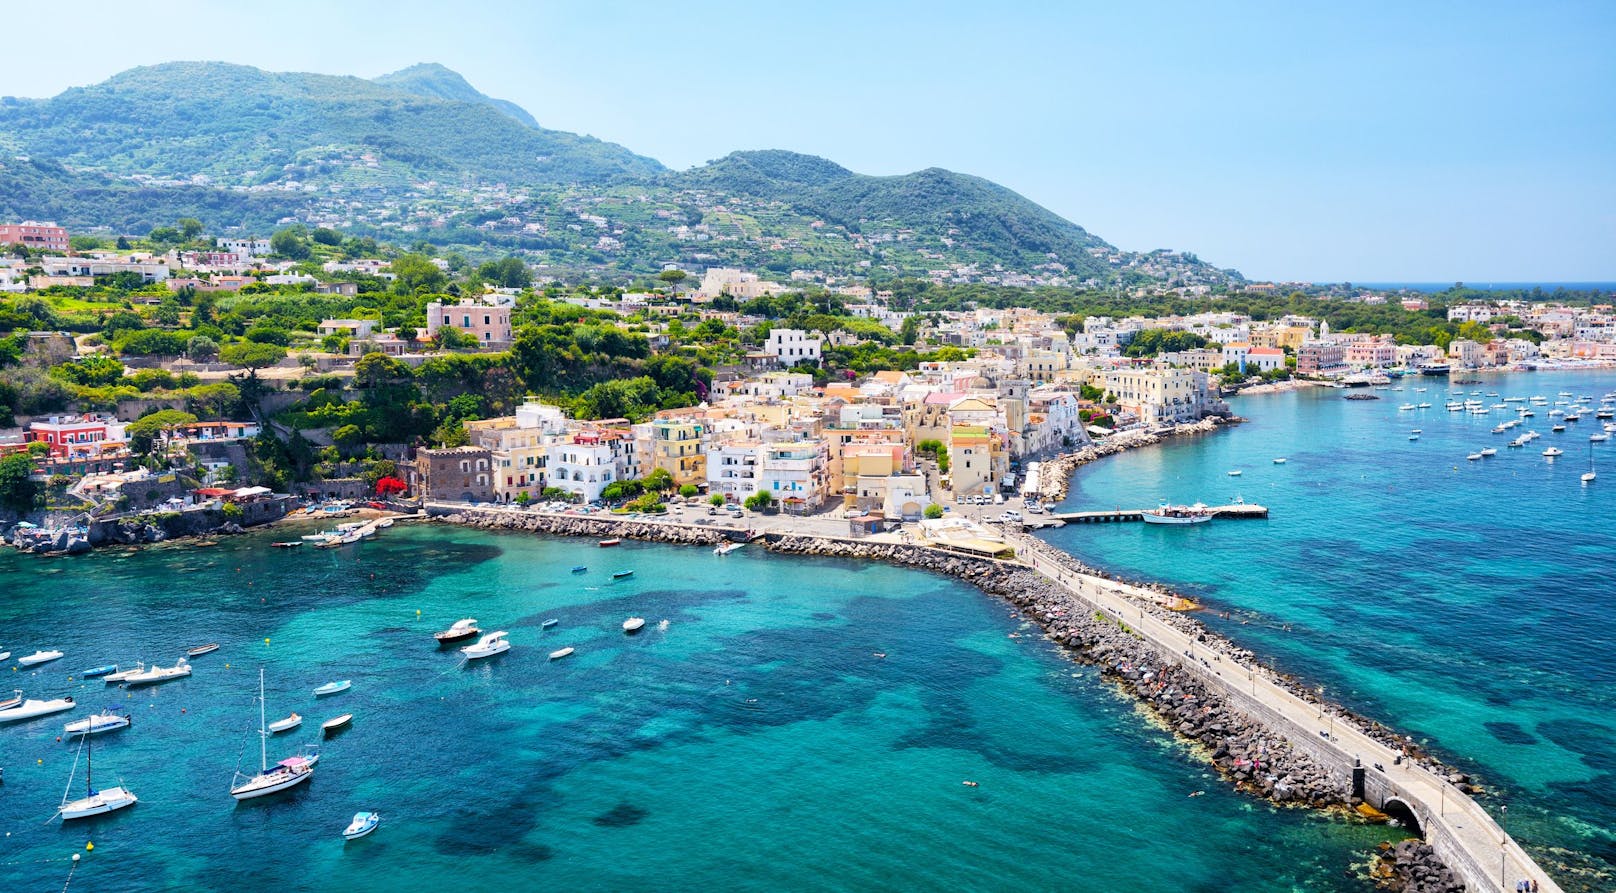 Ischia liegt im Golf von Neapel und ist mit seinen malerischen Gässchen, dem tiefblauen Meer sowie dem guten Klima ein beliebtes Ferienziel.